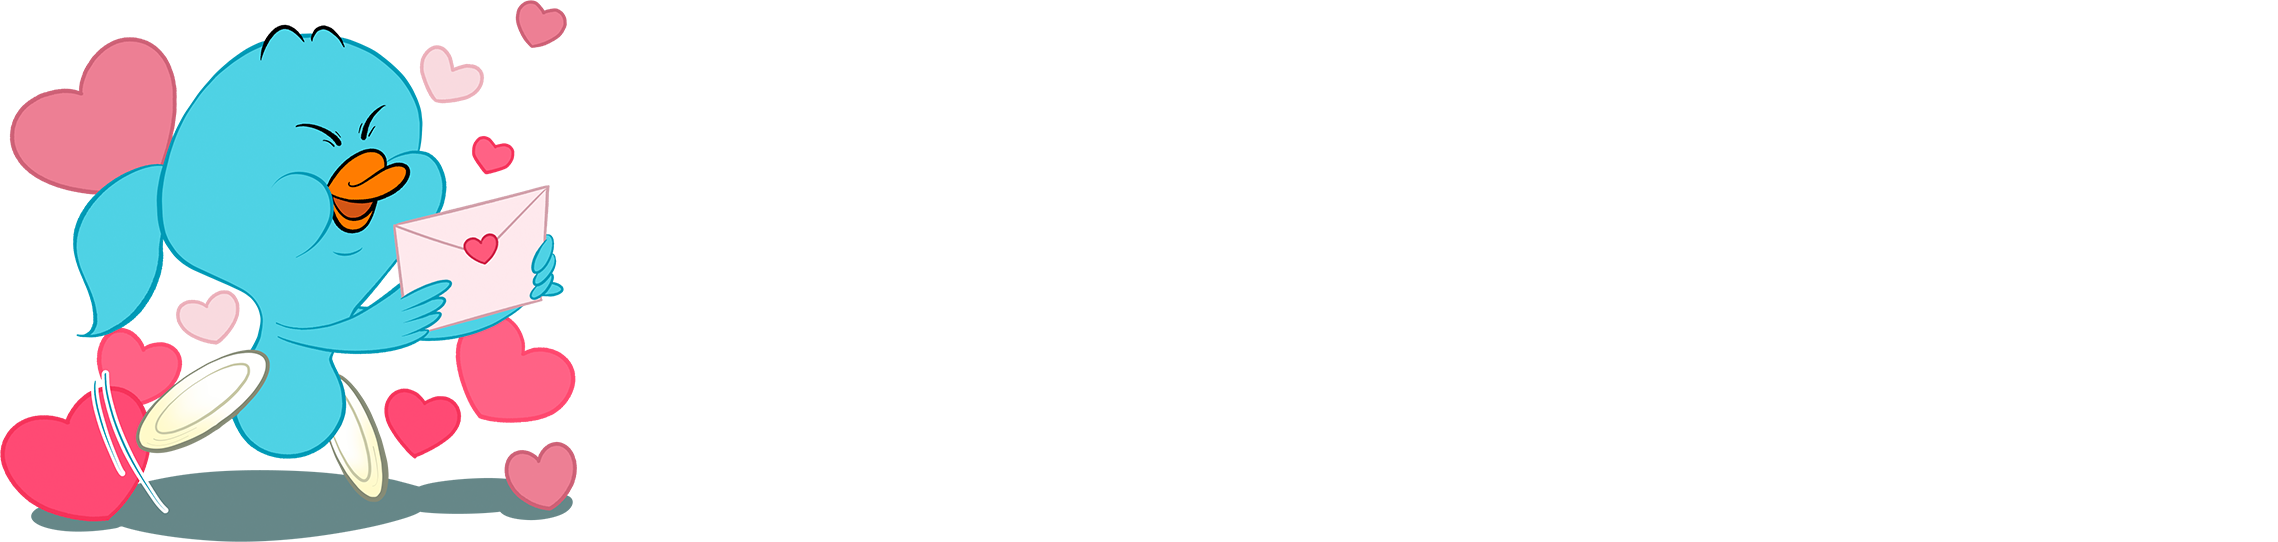 上地結⾐選⼿の公式マスコットキャラクター Go! Karmy